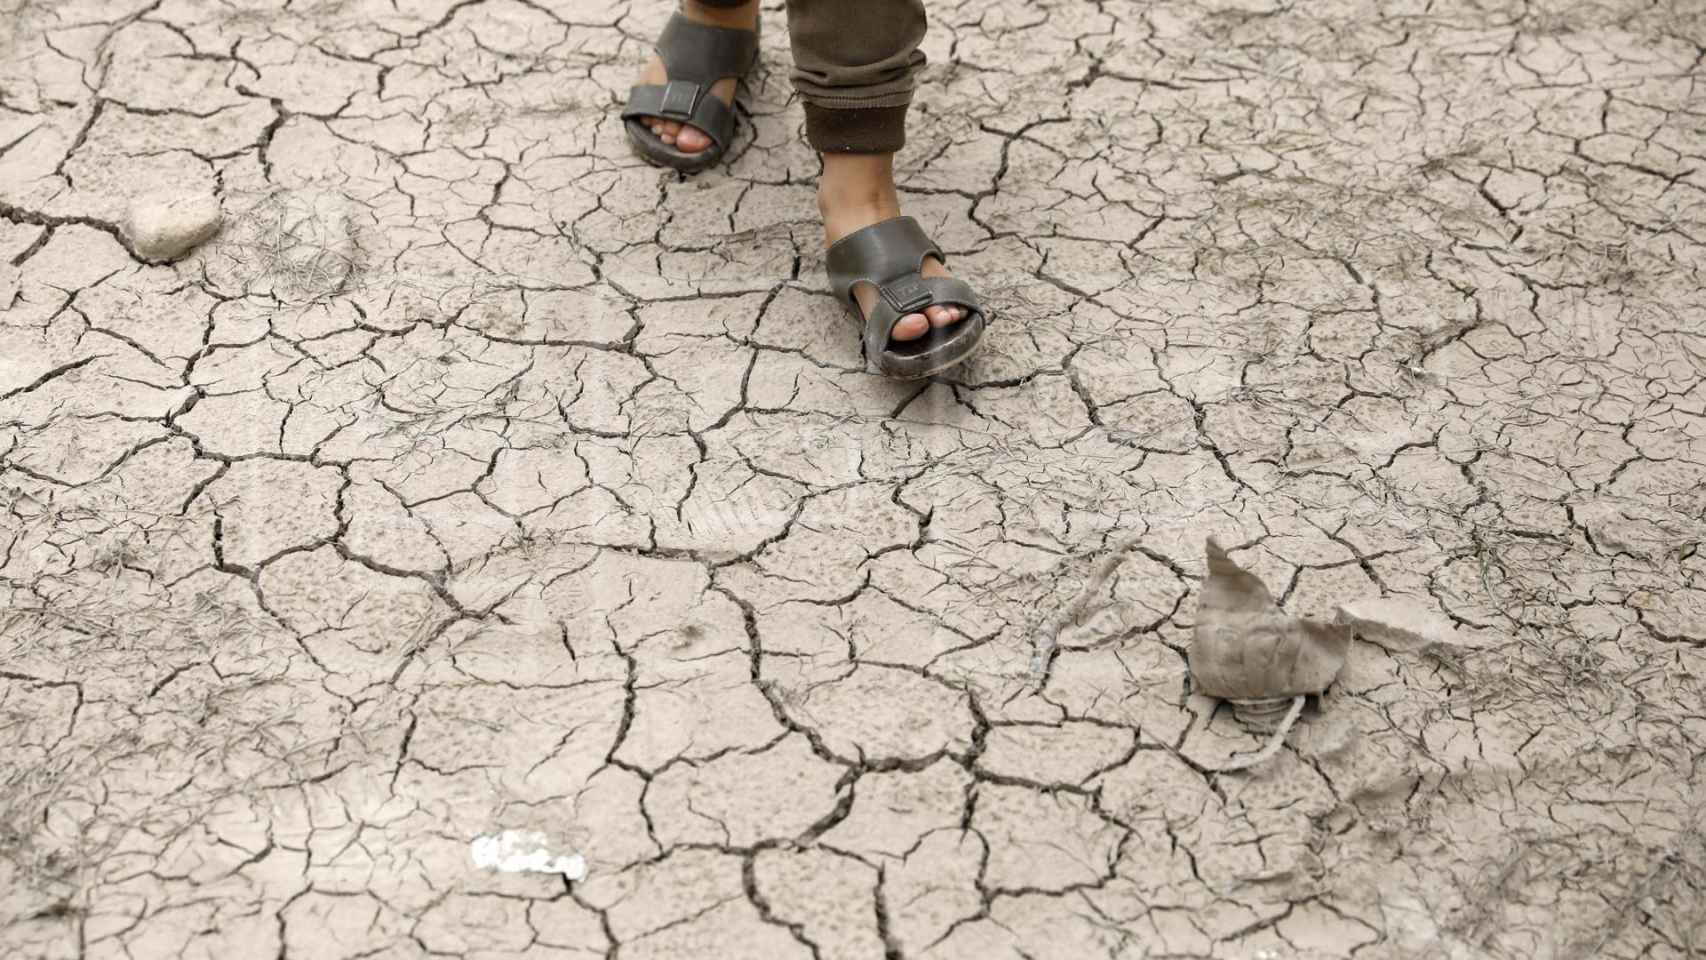 Un persona camina sobre tierra afectada por la sequía.